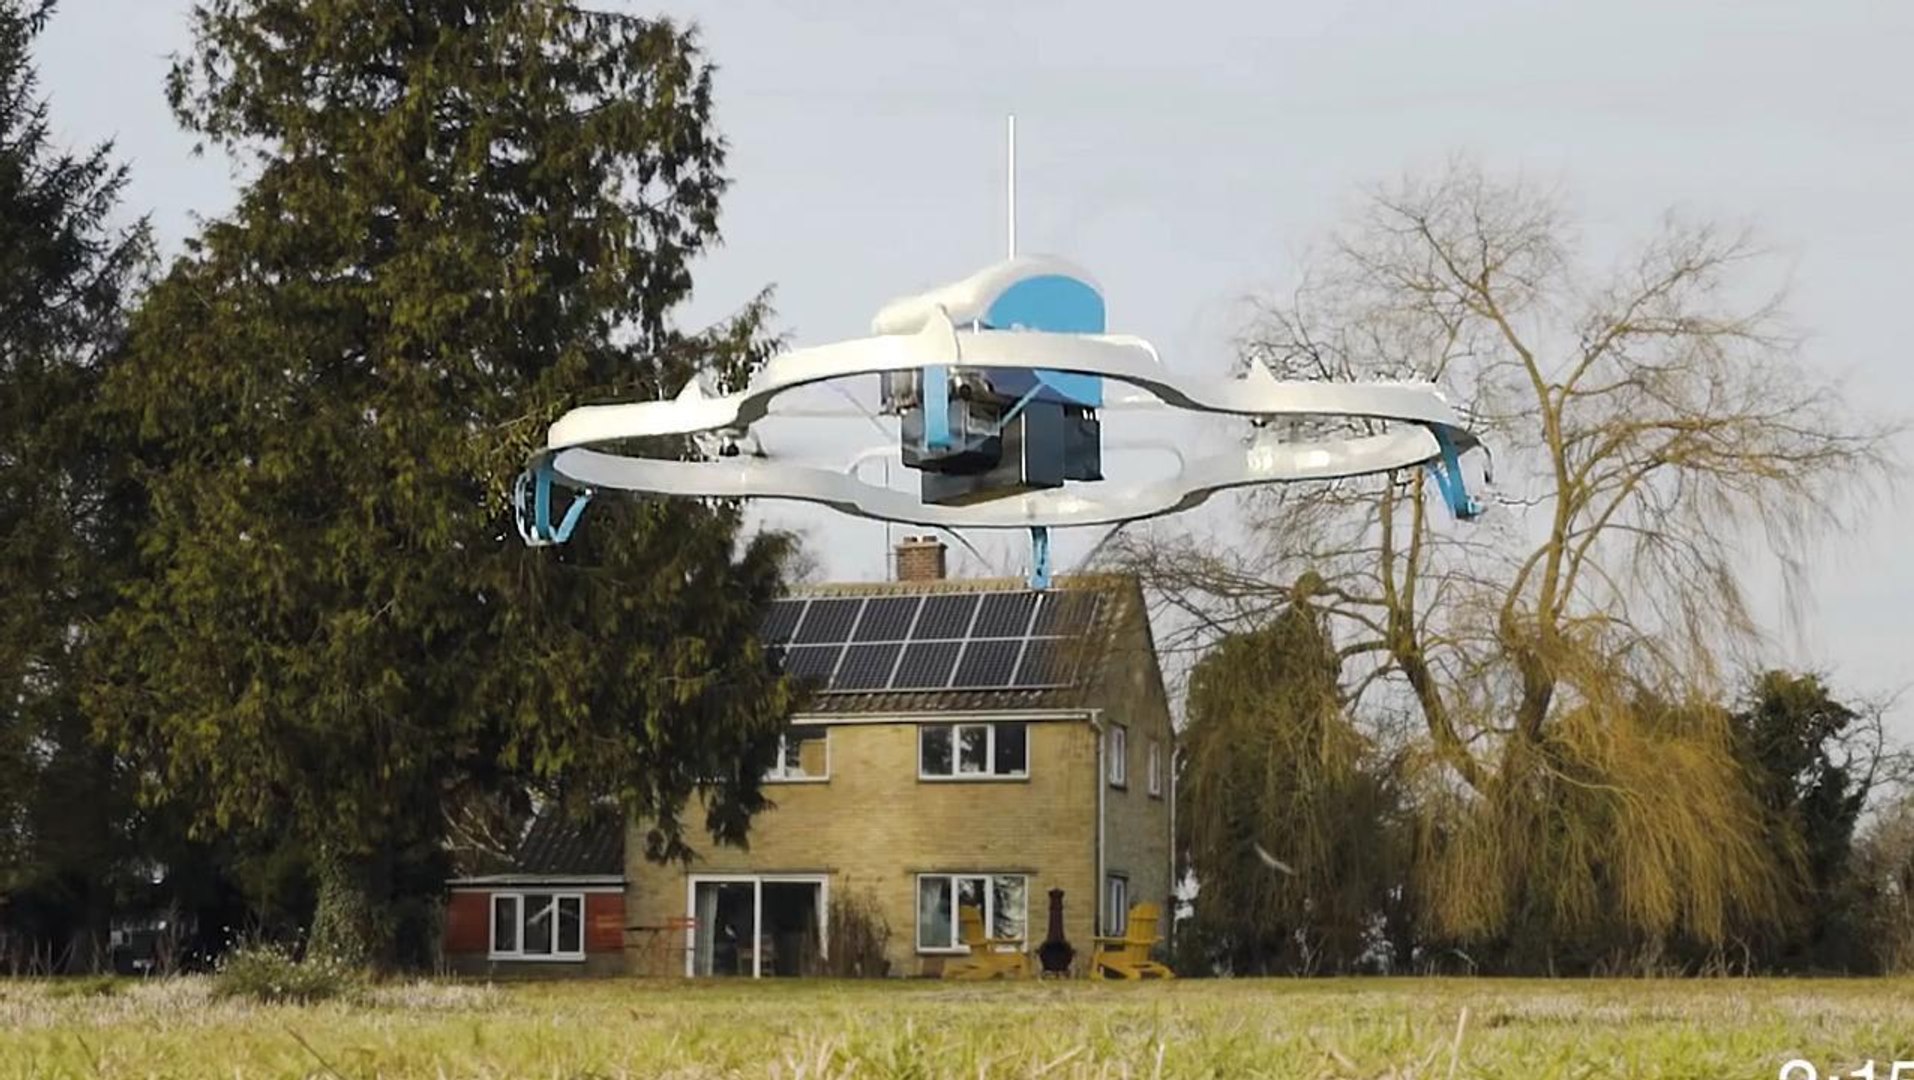 Livraison par drone : Amazon installe un centre de recherche en Ile-de- France - Vidéo Dailymotion